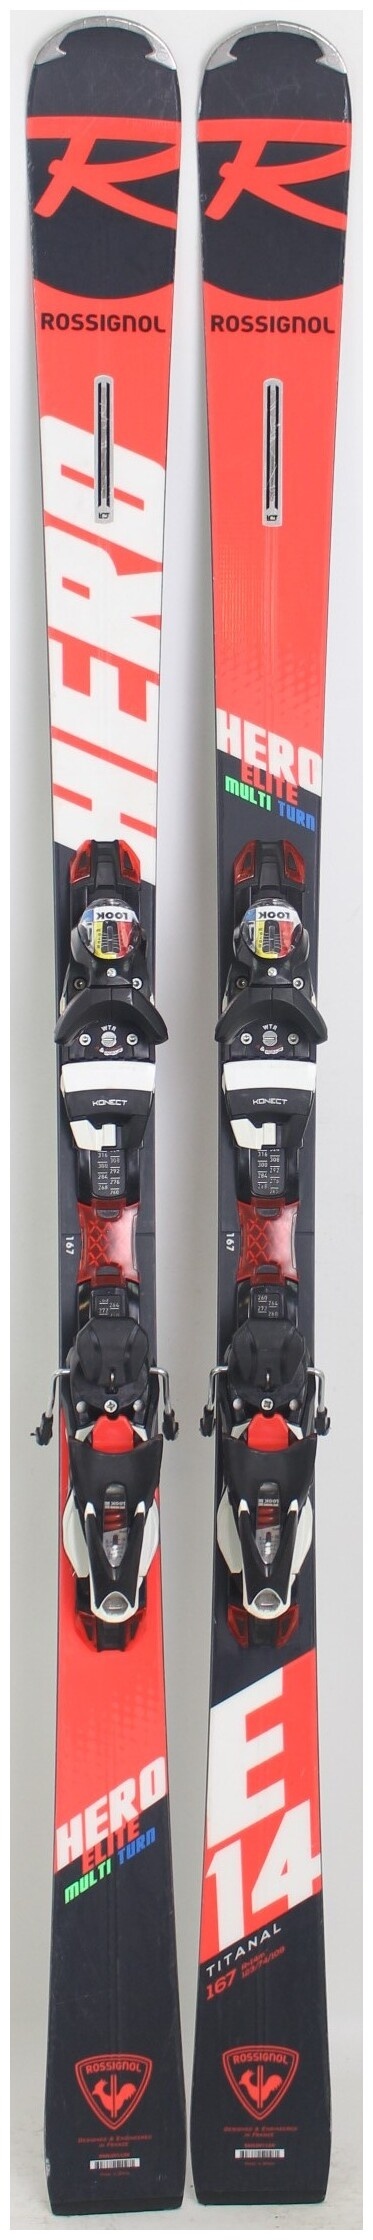 2020, Rossignol, Hero Elite MT Ti Skis with Look SPX 12 Grip Walk Konect  Demo Bindings Used Demo Skis 167cm